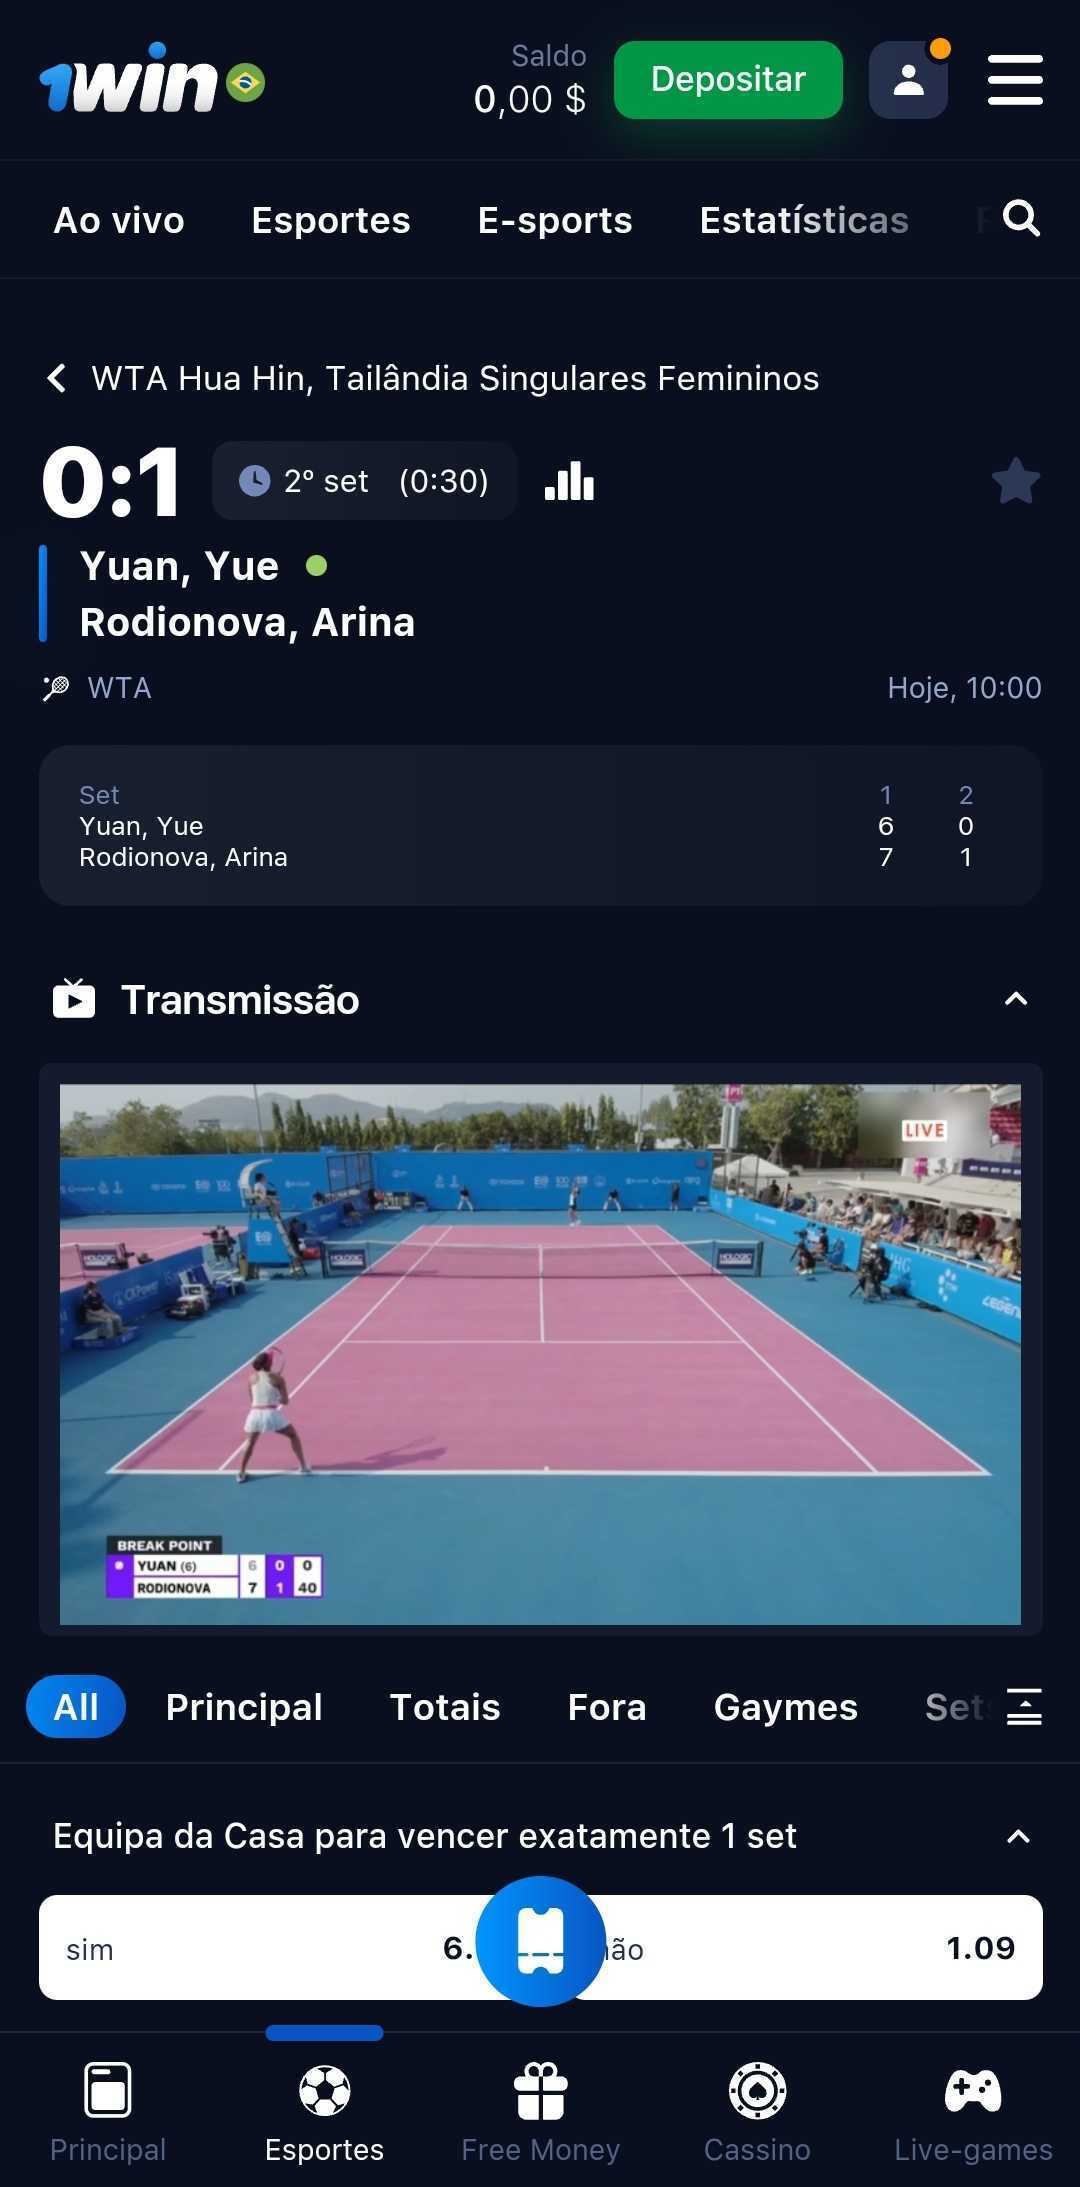 Transmissão ao vivo de uma partida de tênis.